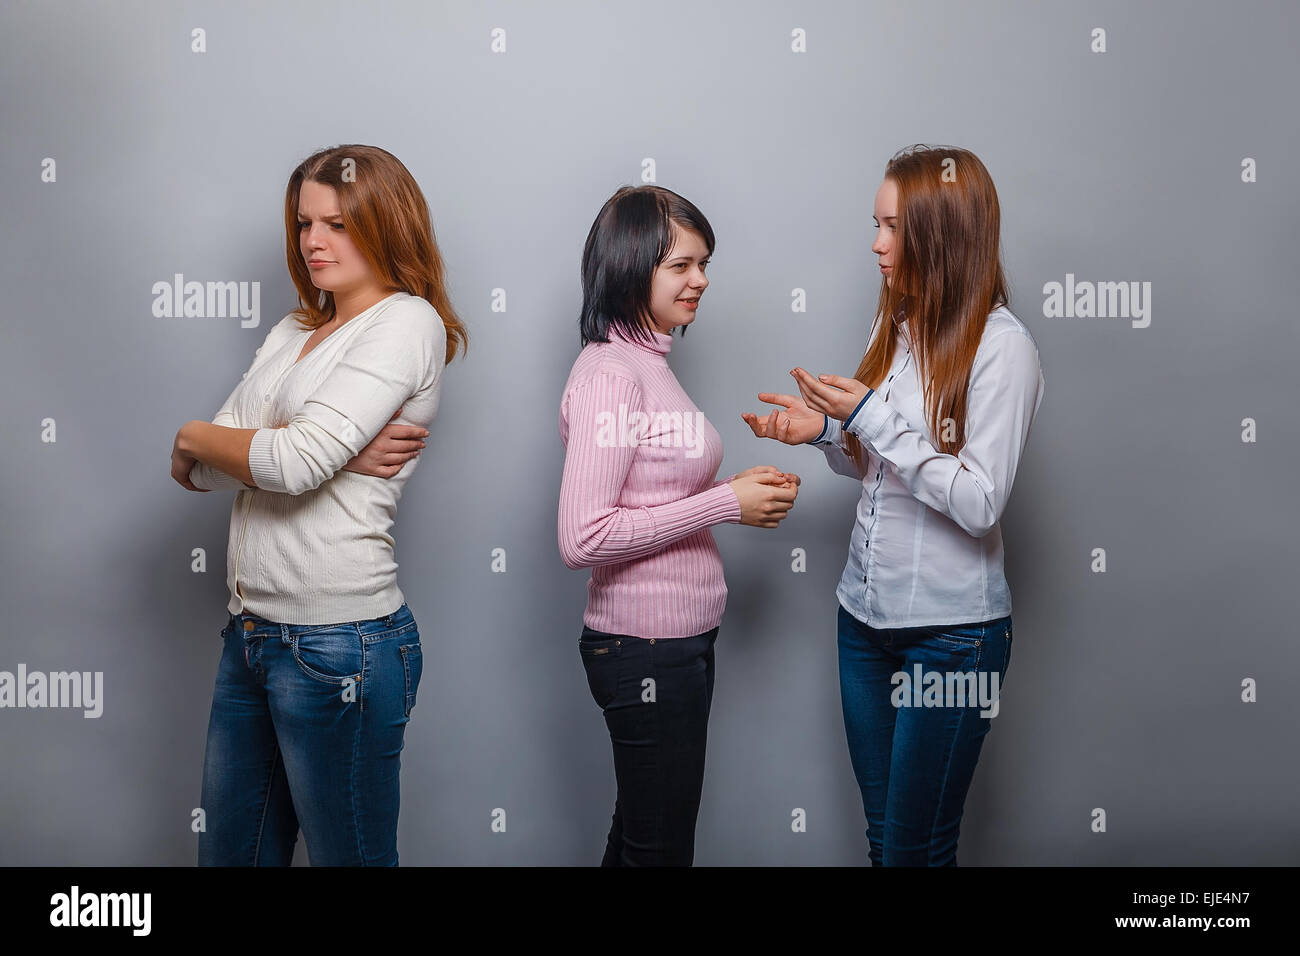 Zwei Mädchen reden blonde europäischen aussehen und ignorieren das dritte Mädchen auf einem grauen Hintergrund, Groll, Traurigkeit Konflikt Freund Stockfoto